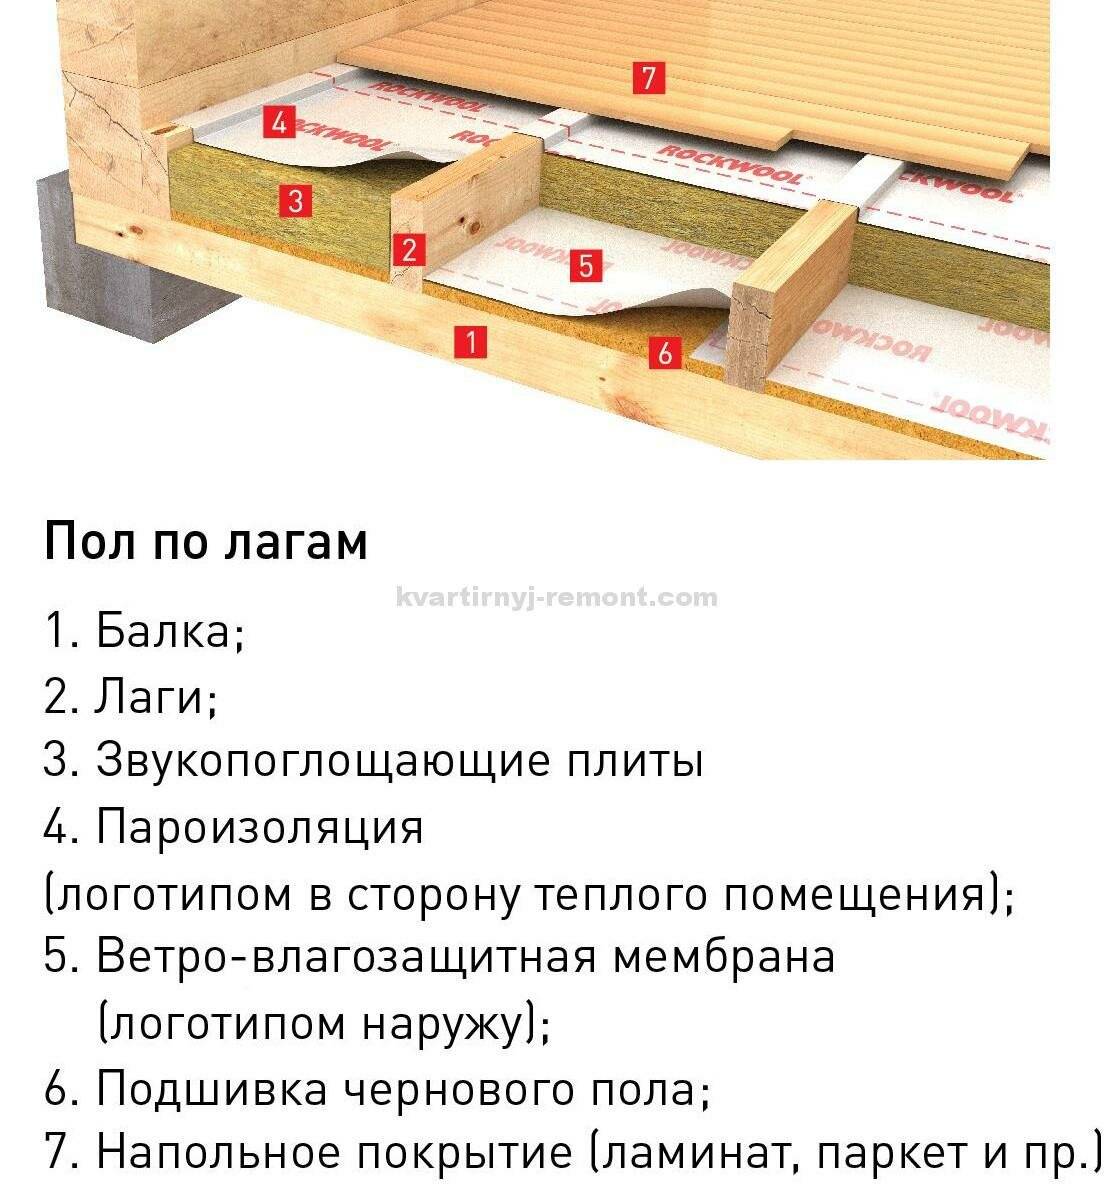 Деревянный пол в квартире своими руками: устройство, материалы